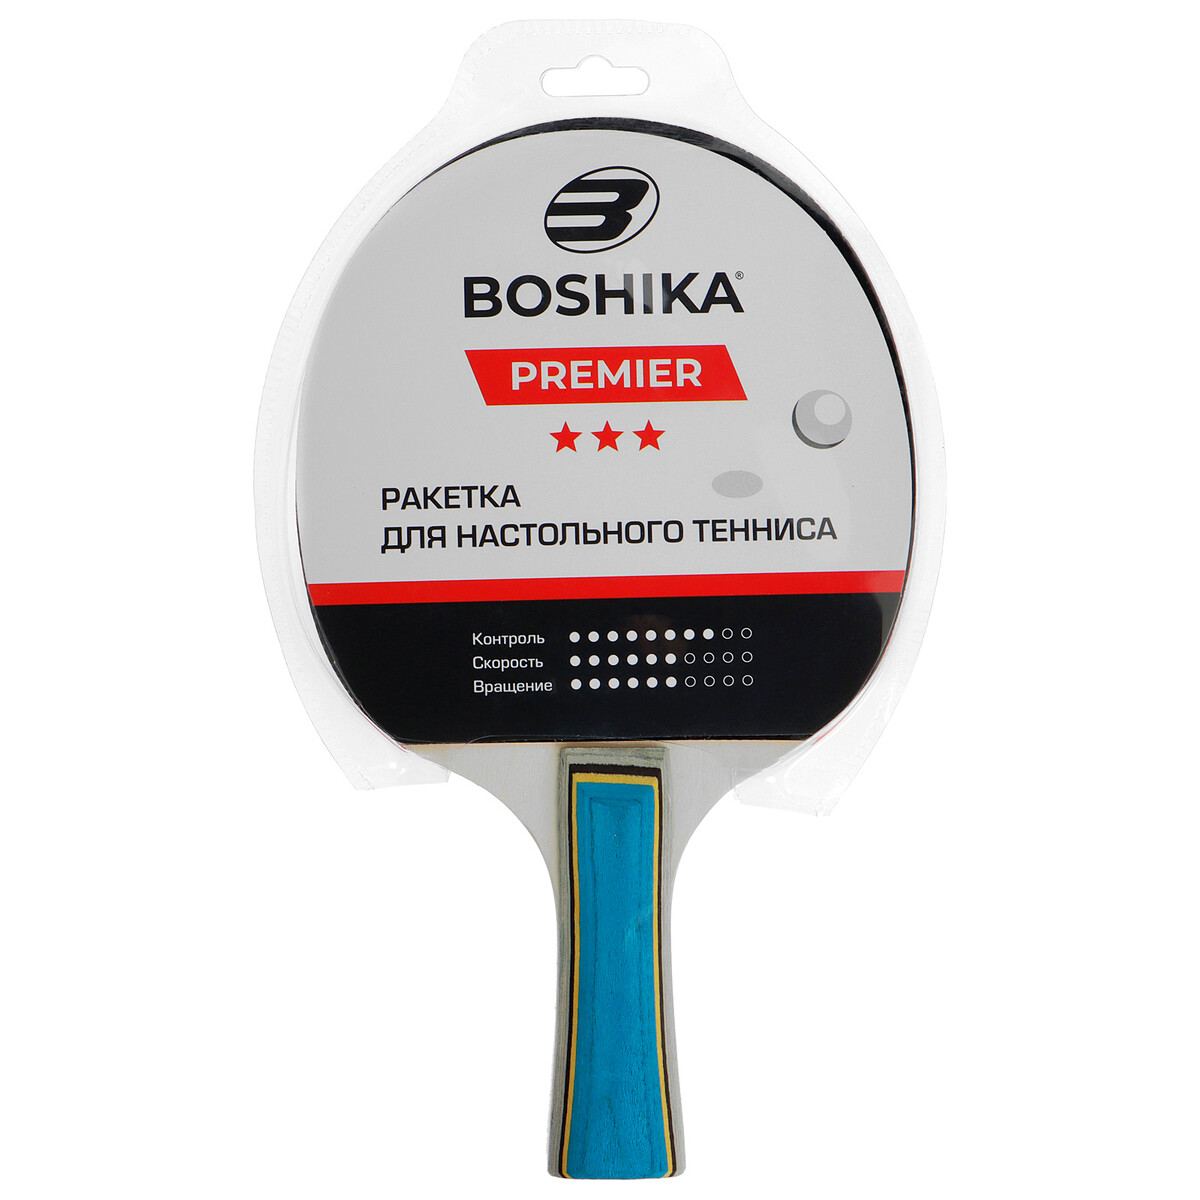 фото Ракетка для настольного тенниса boshika premier, 3 звезды